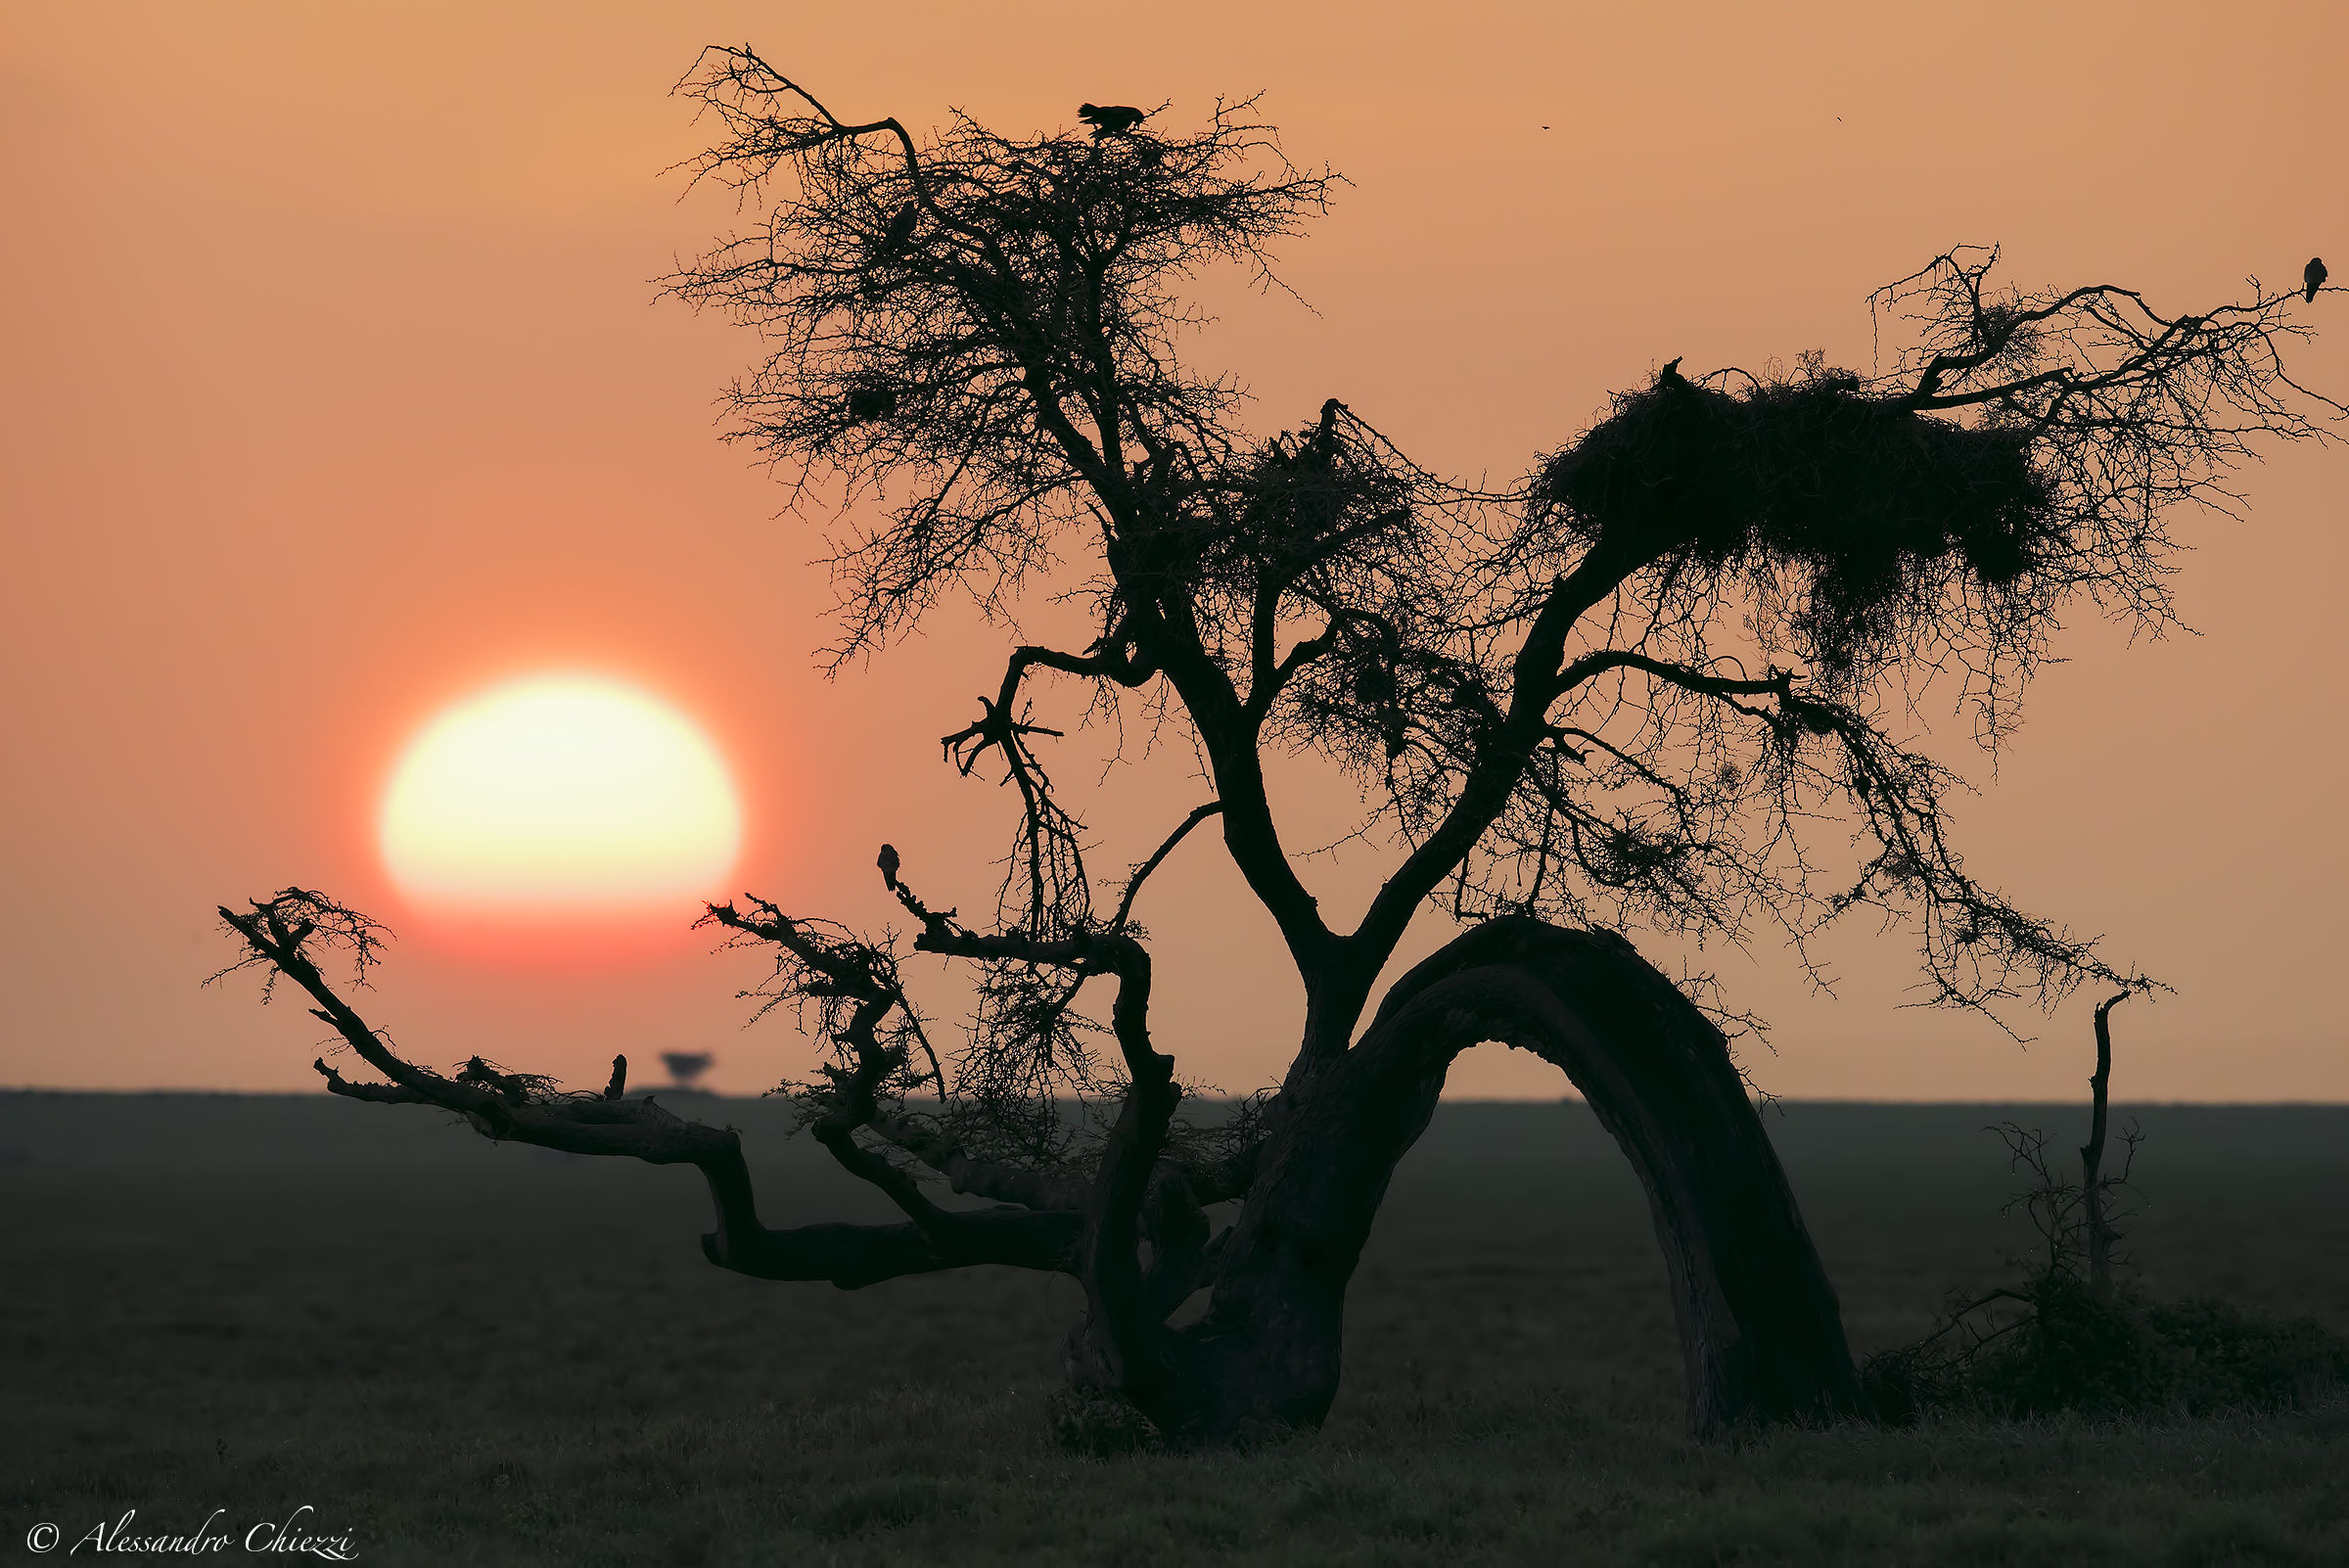 Sunset on the Serengeti...